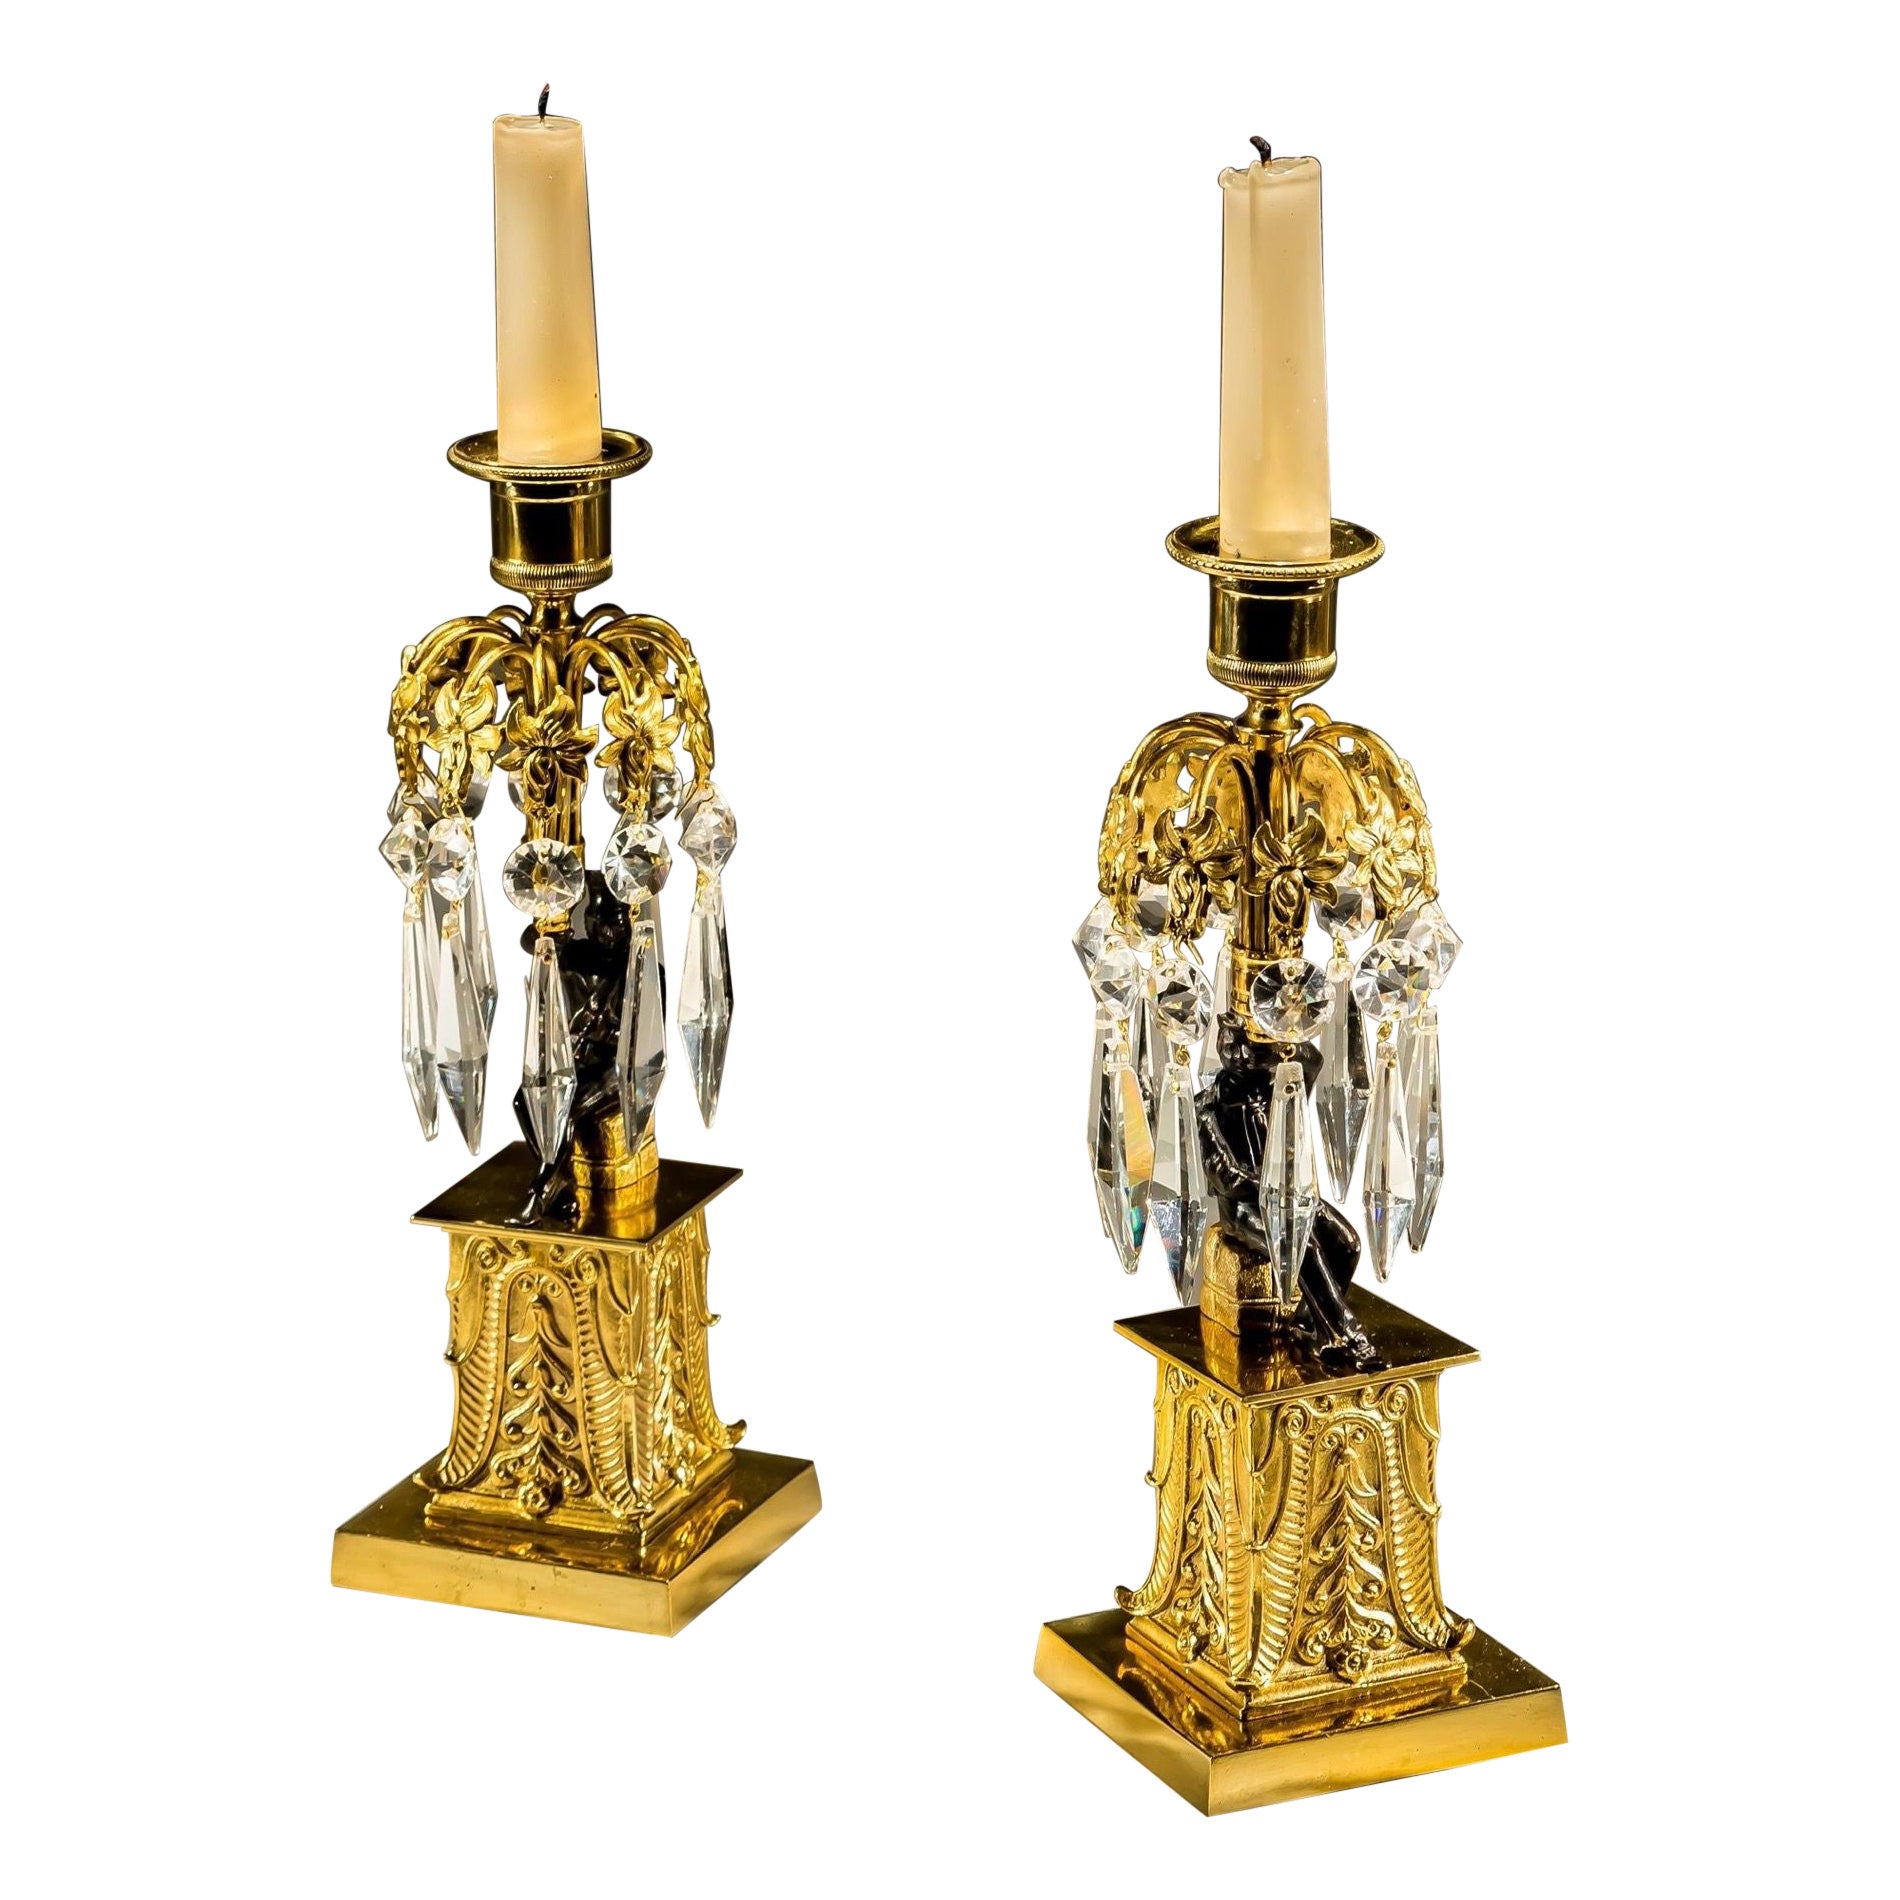 Paire de chandeliers inhabituels en bronze et doré représentant une figure militaire